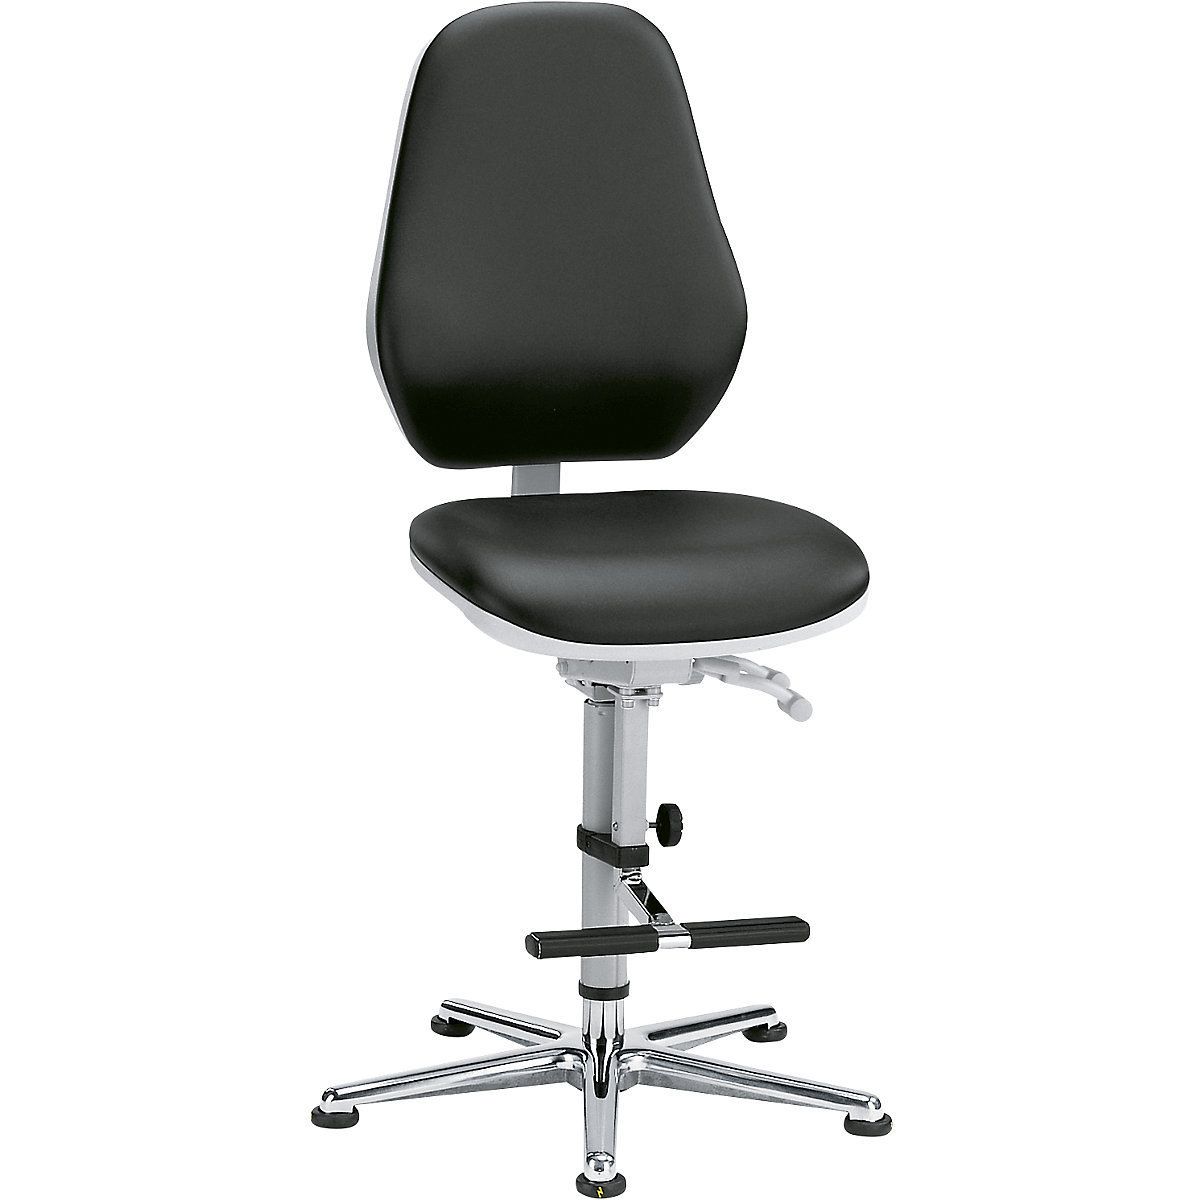 Pracovní otočná židle pro čisté prostory – bimos, s patkami a pomůckou pro výstup, permanentní kontakt, přestavování sklonu sedáku-2